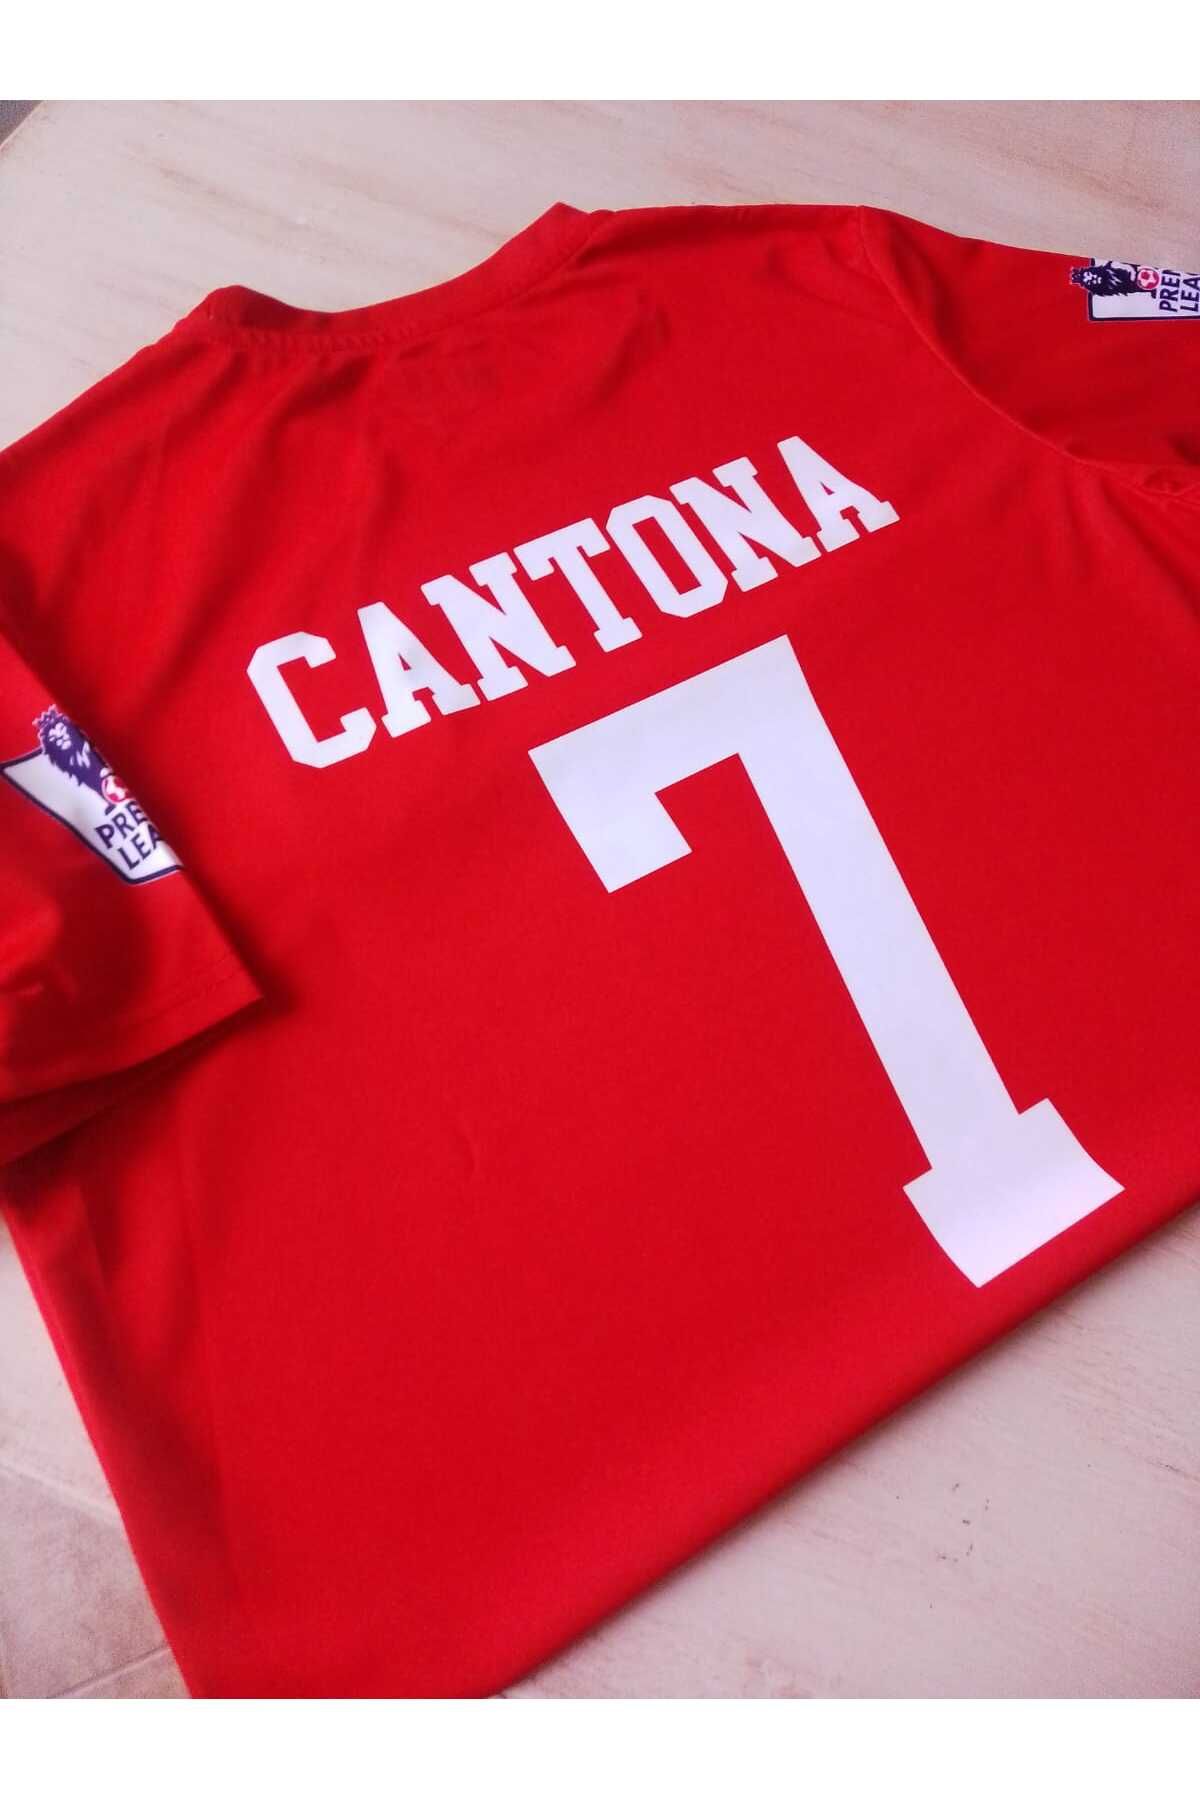 Armageddon Efsane Eric Cantona Manchester United Kırmızı Forması